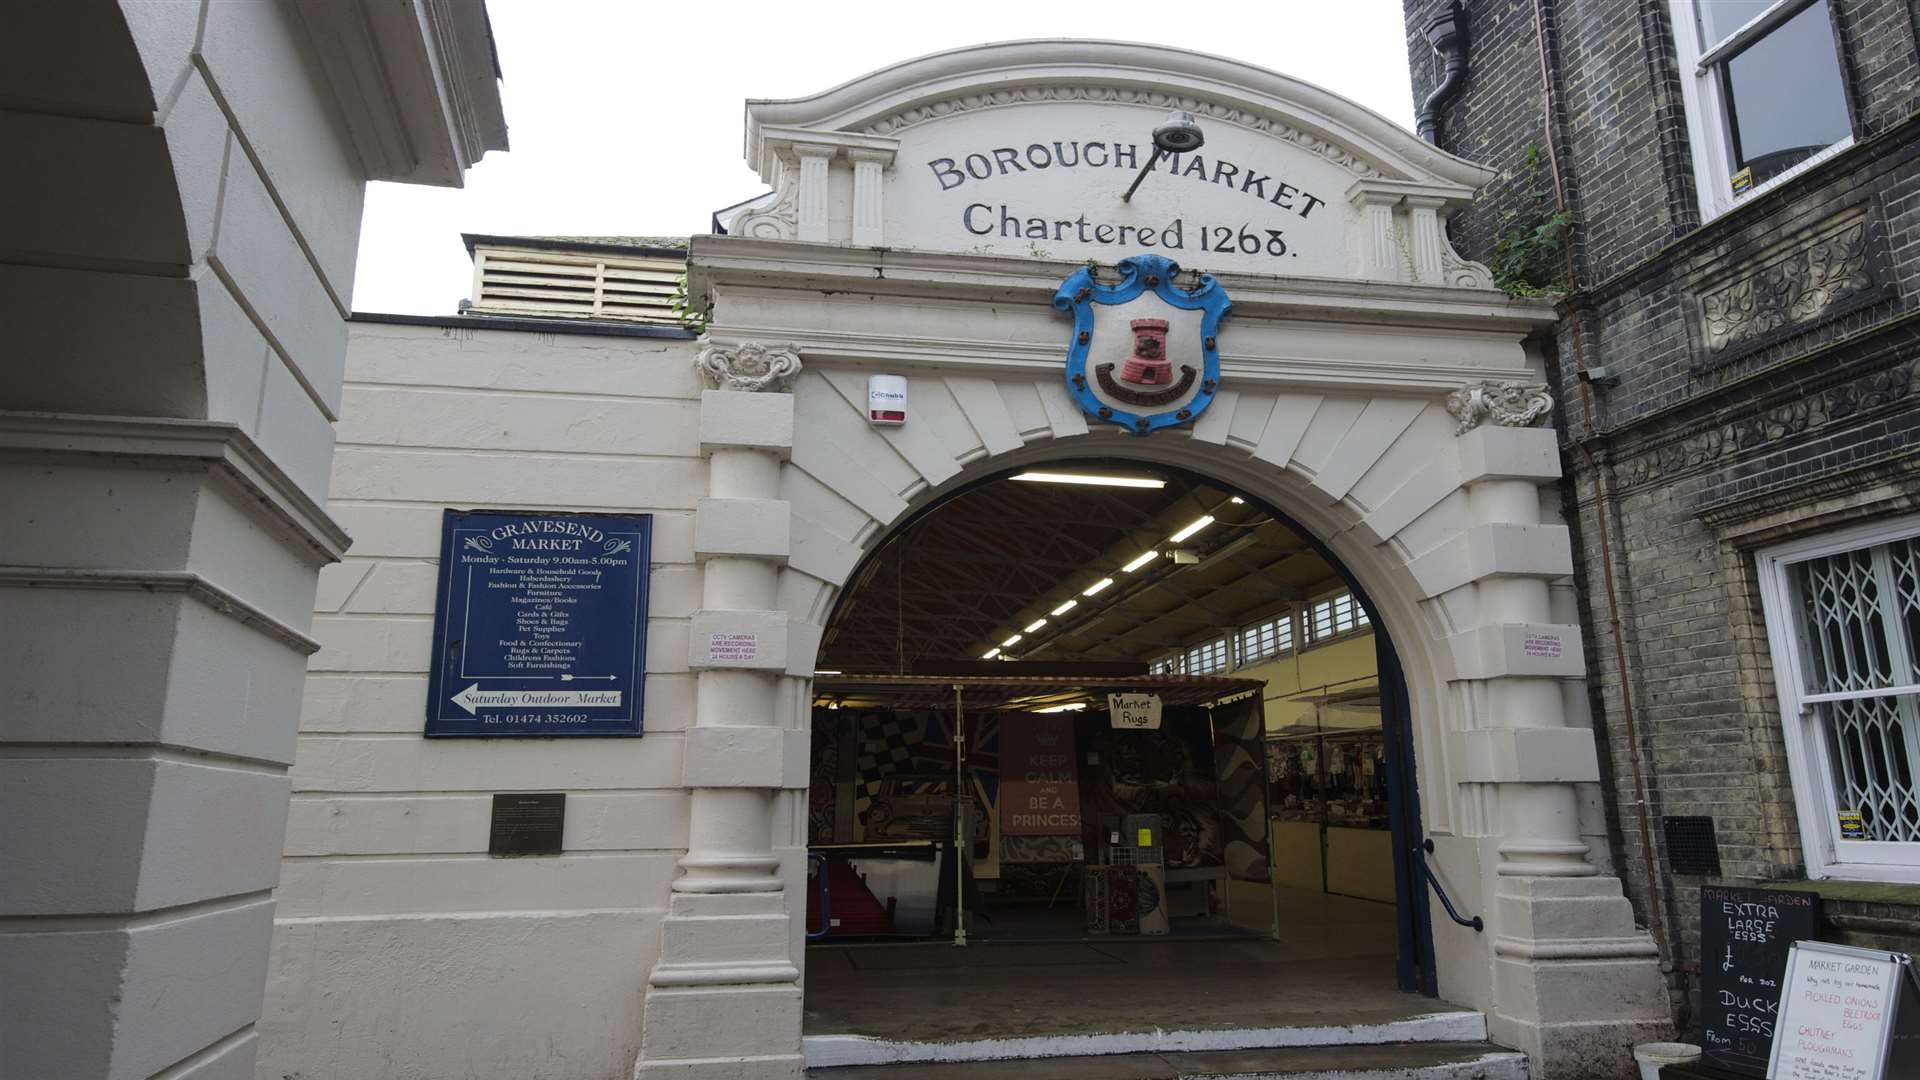 The Borough Market in Gravesend